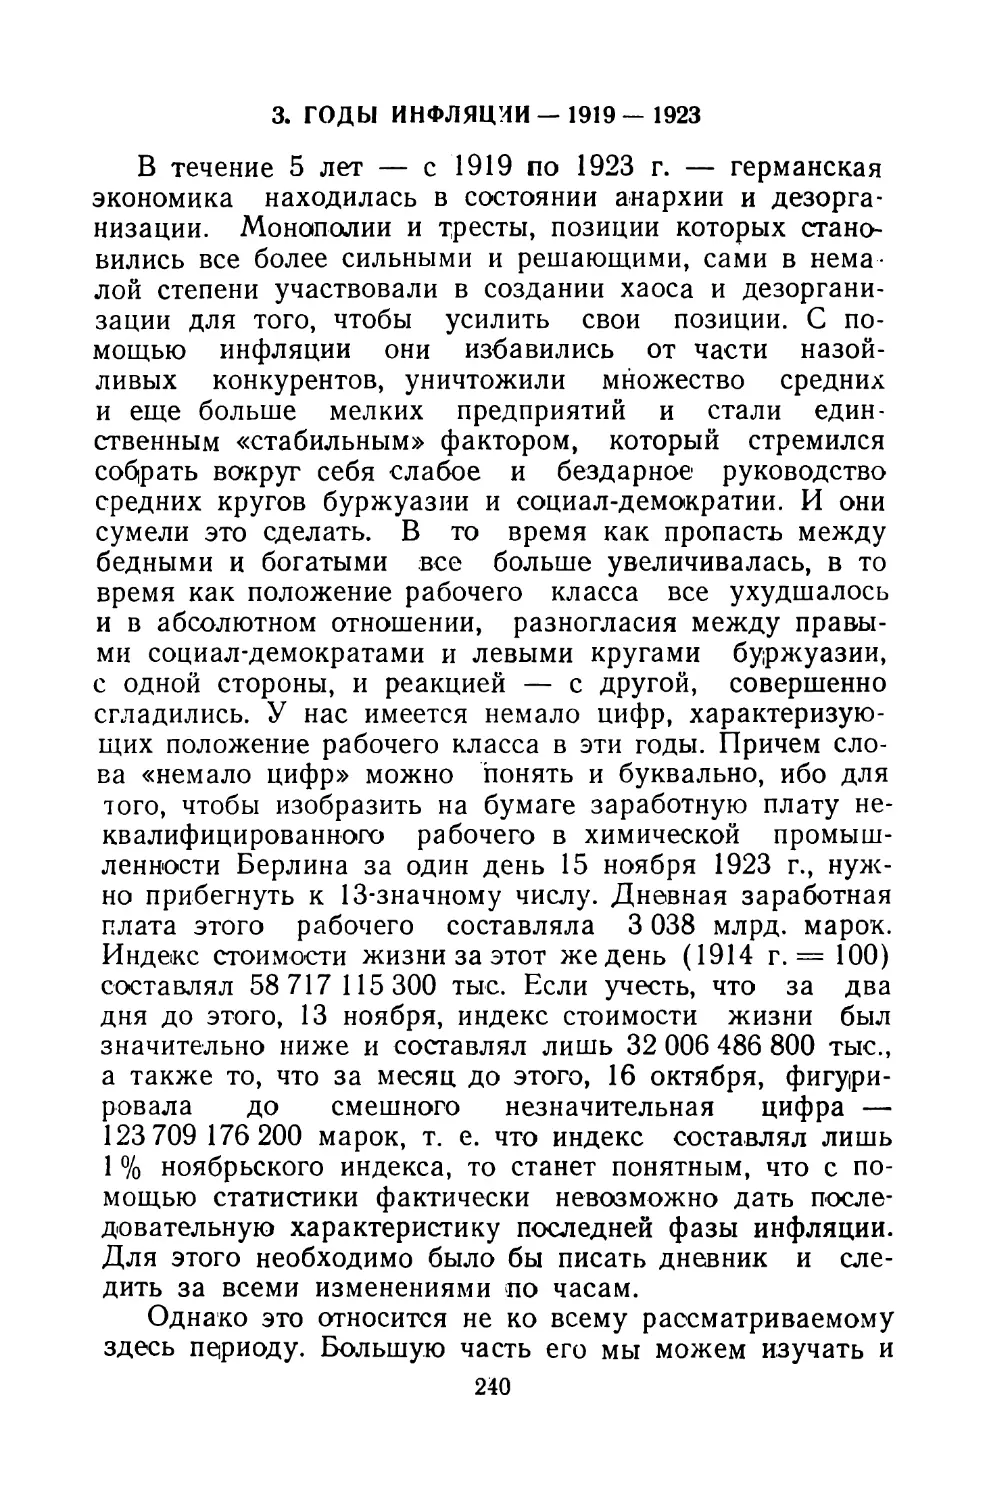 3. ГОДЫ ИНФЛЯЦИИ — 1919-1923.